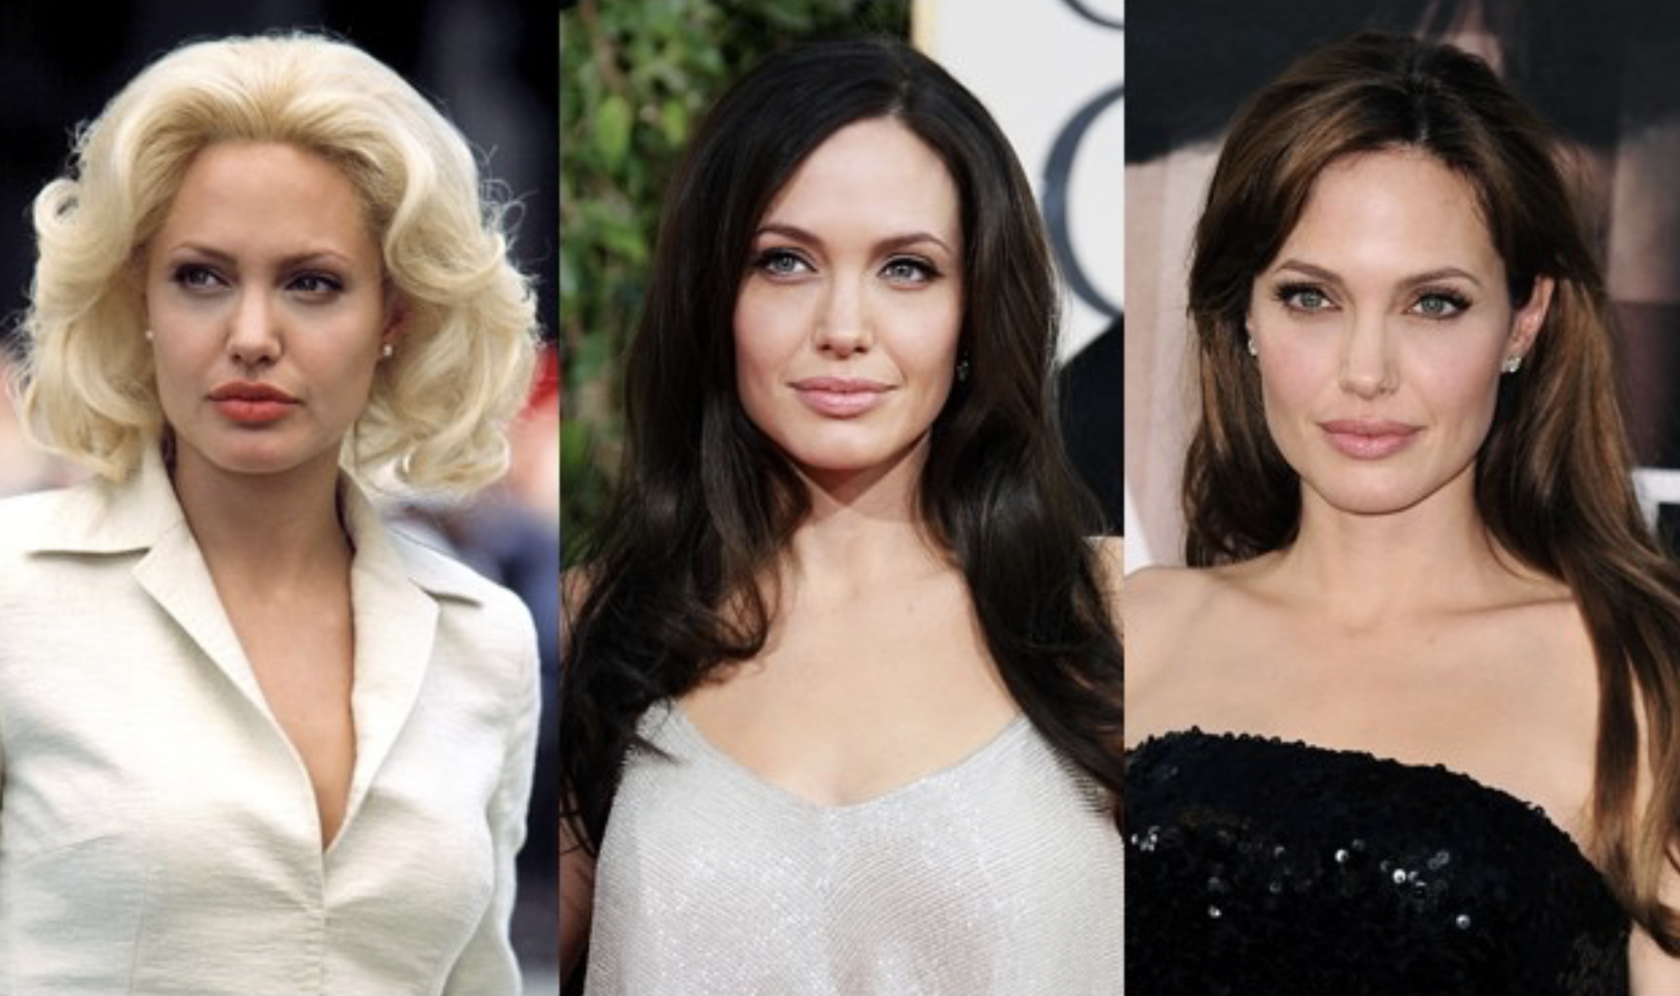 Брюнетка в блондинку до и после. Анджелина Джоли цветотип. Анджелина Джоли цветотип внешности. Анджелина Джоли перекрасилась в блондинку. Цветотип Джоли Анджелина Джоли.